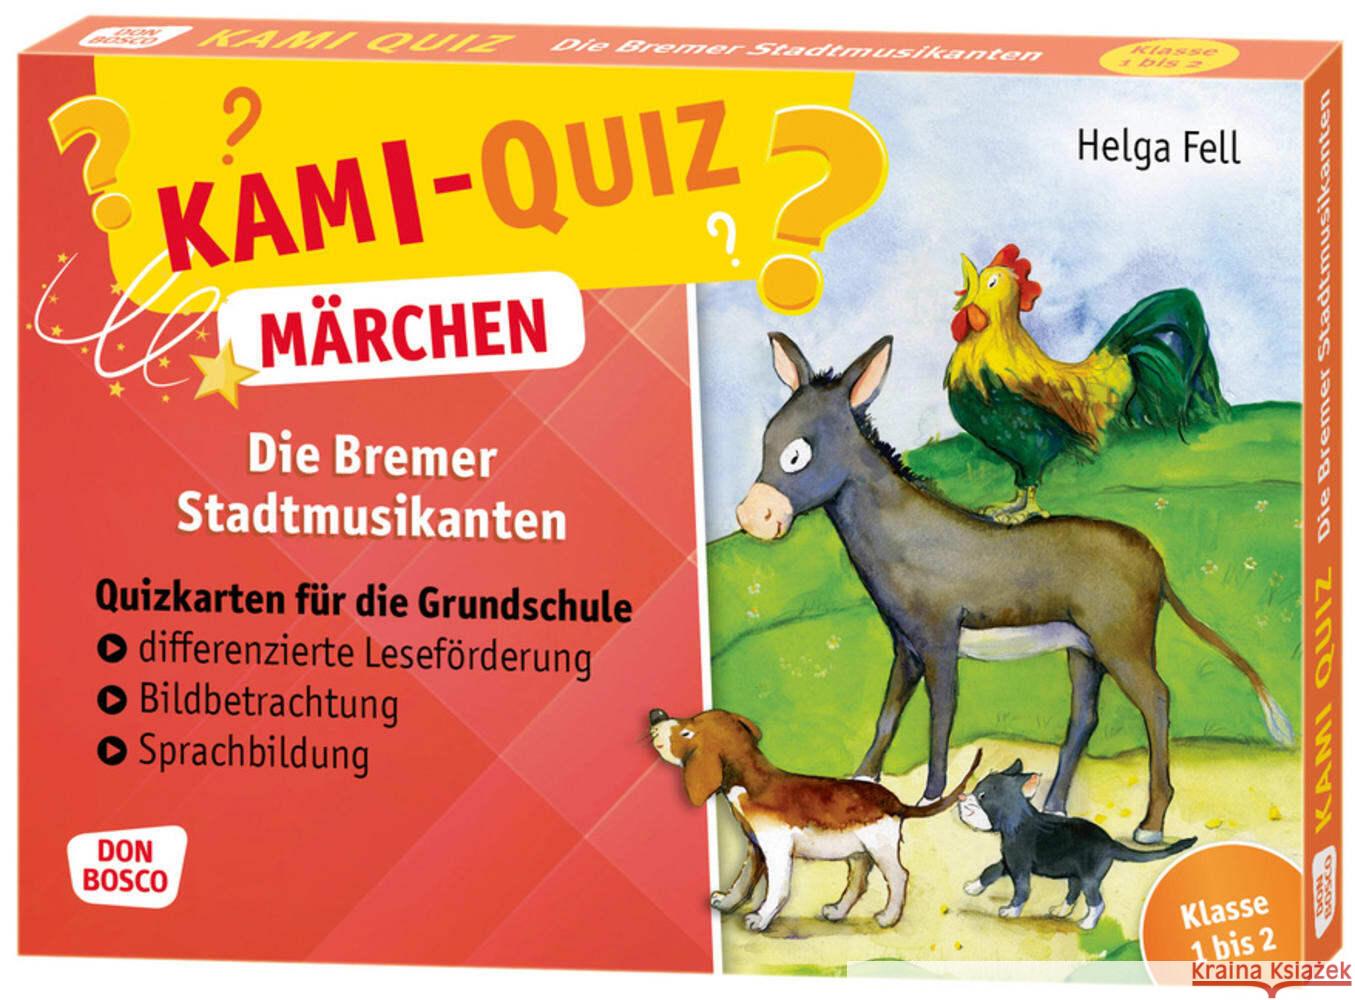 Kami-Quiz Märchen: Die Bremer Stadtmusikanten Fell, Helga 4260179516856 Don Bosco Medien - książka